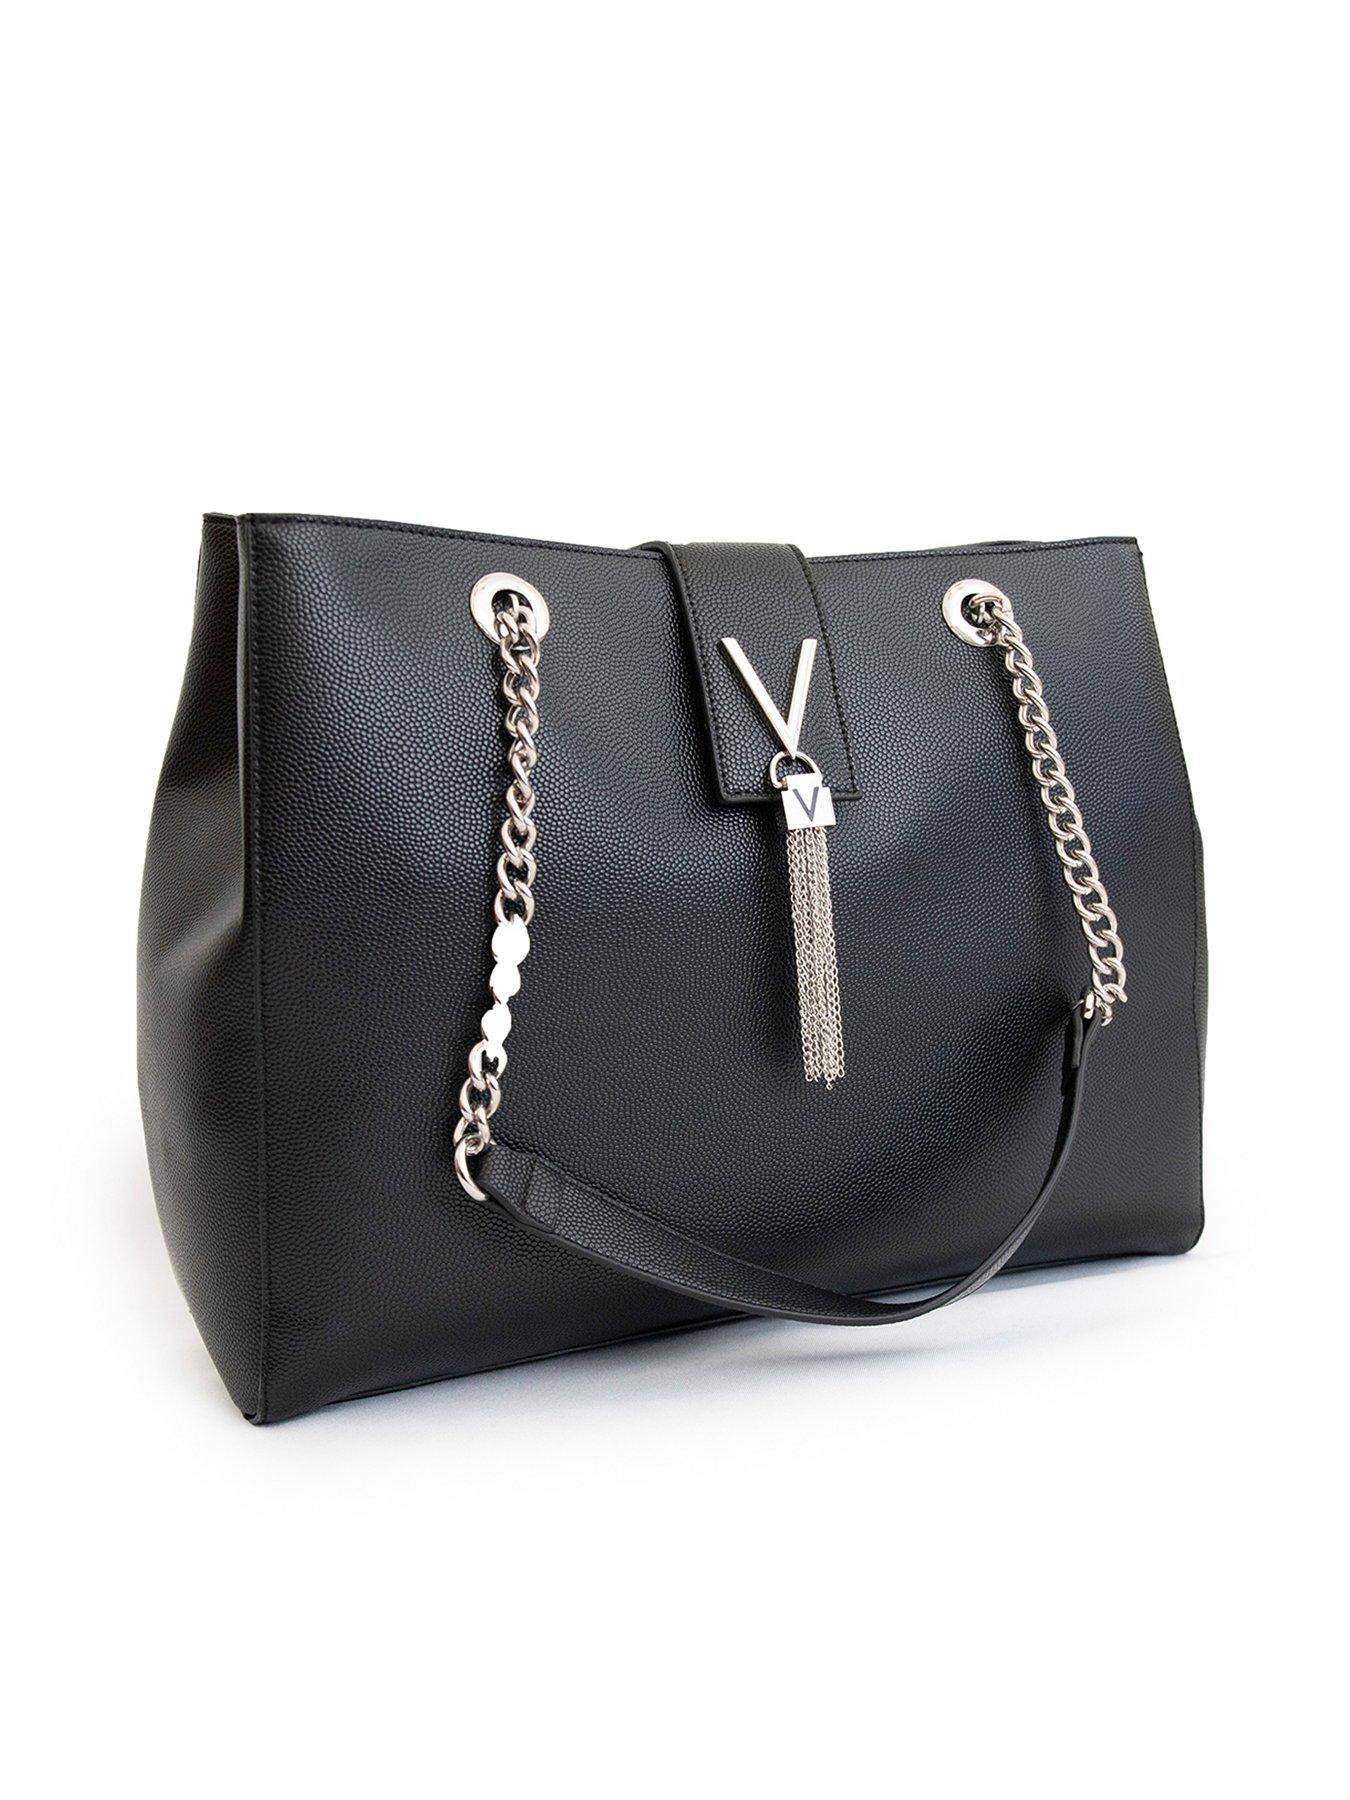 Valentino Women'S Divina Large Shoulder Bag - Black for Women